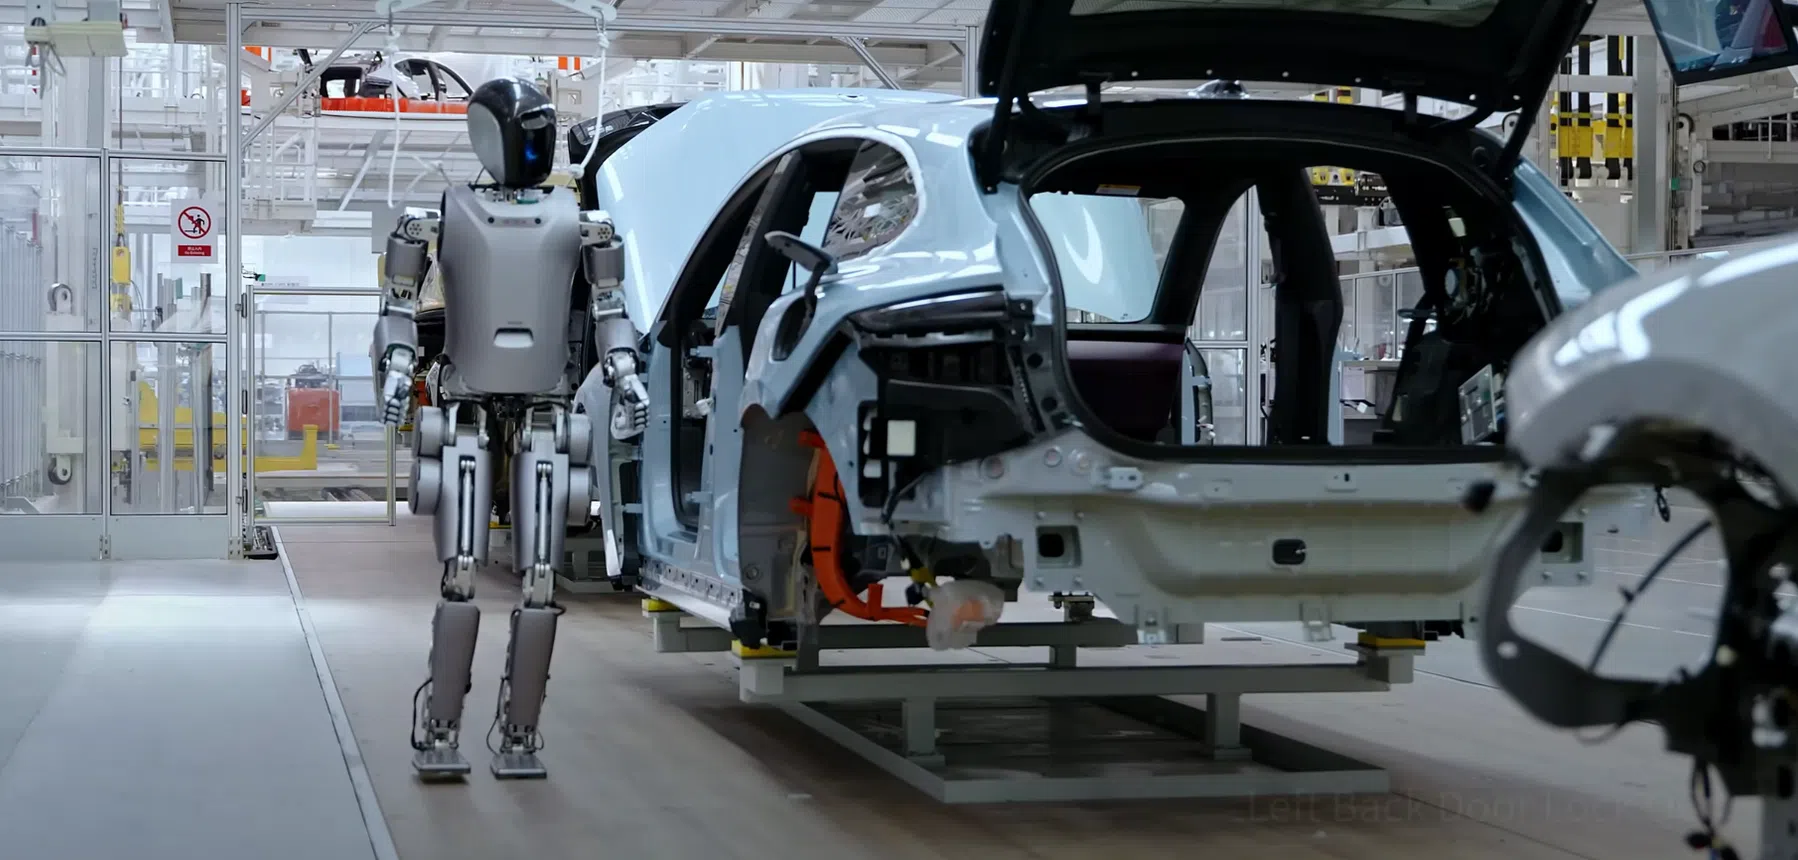 Chinese bedrijven hollen Tesla achterna met eigen mensachtige robots